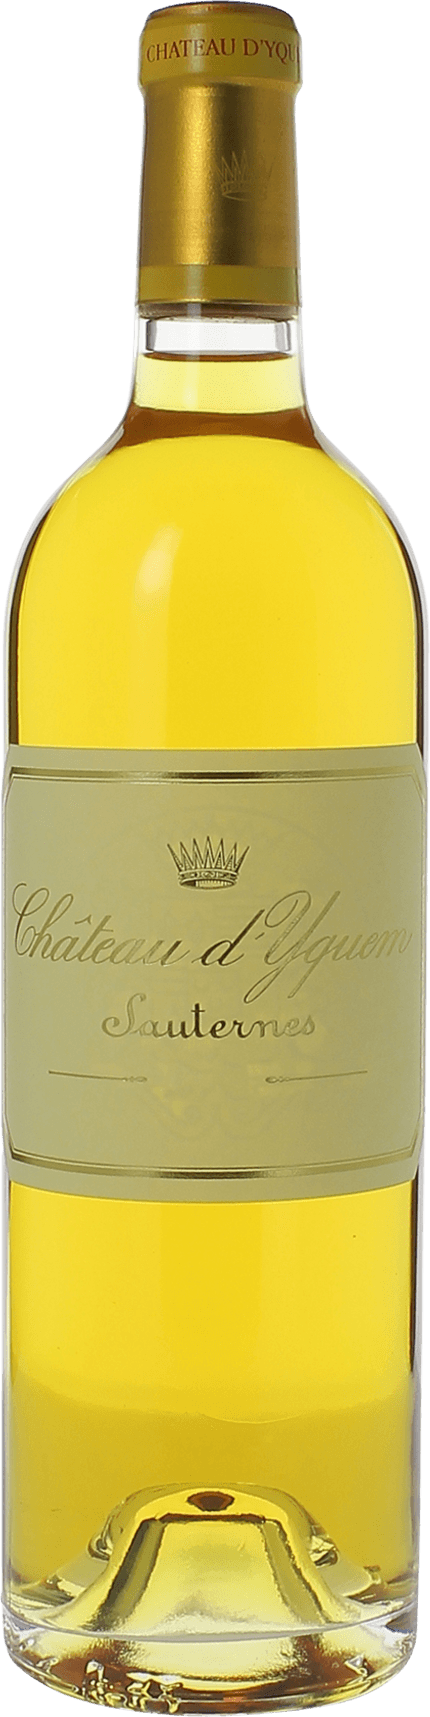 Yquem 1984 1er Grand cru class Sauternes, Bordeaux blanc